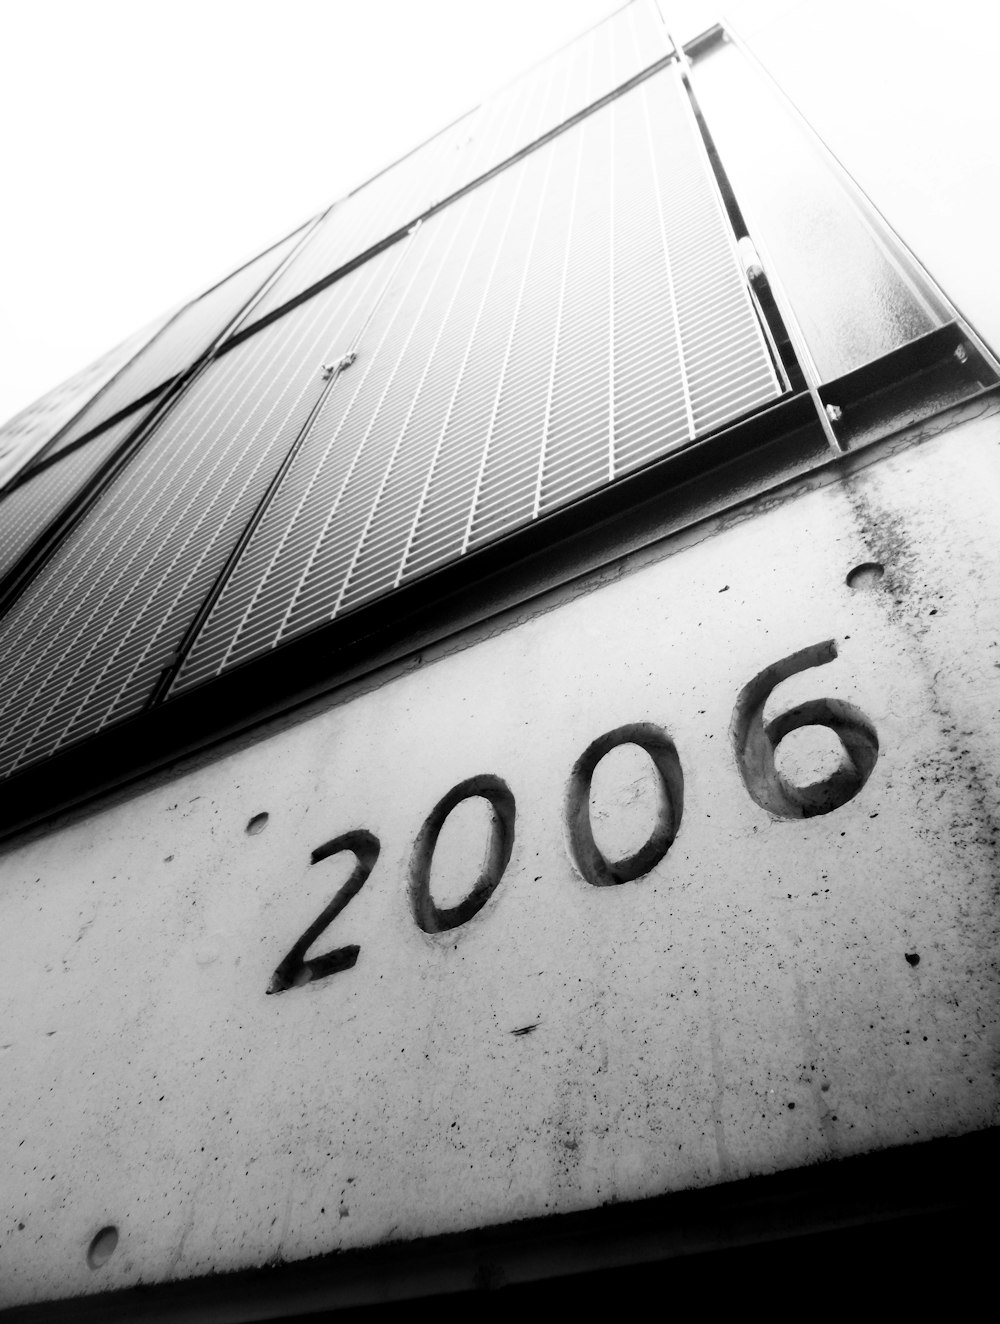 숫자 2006이 적힌 건물의 흑백 사진